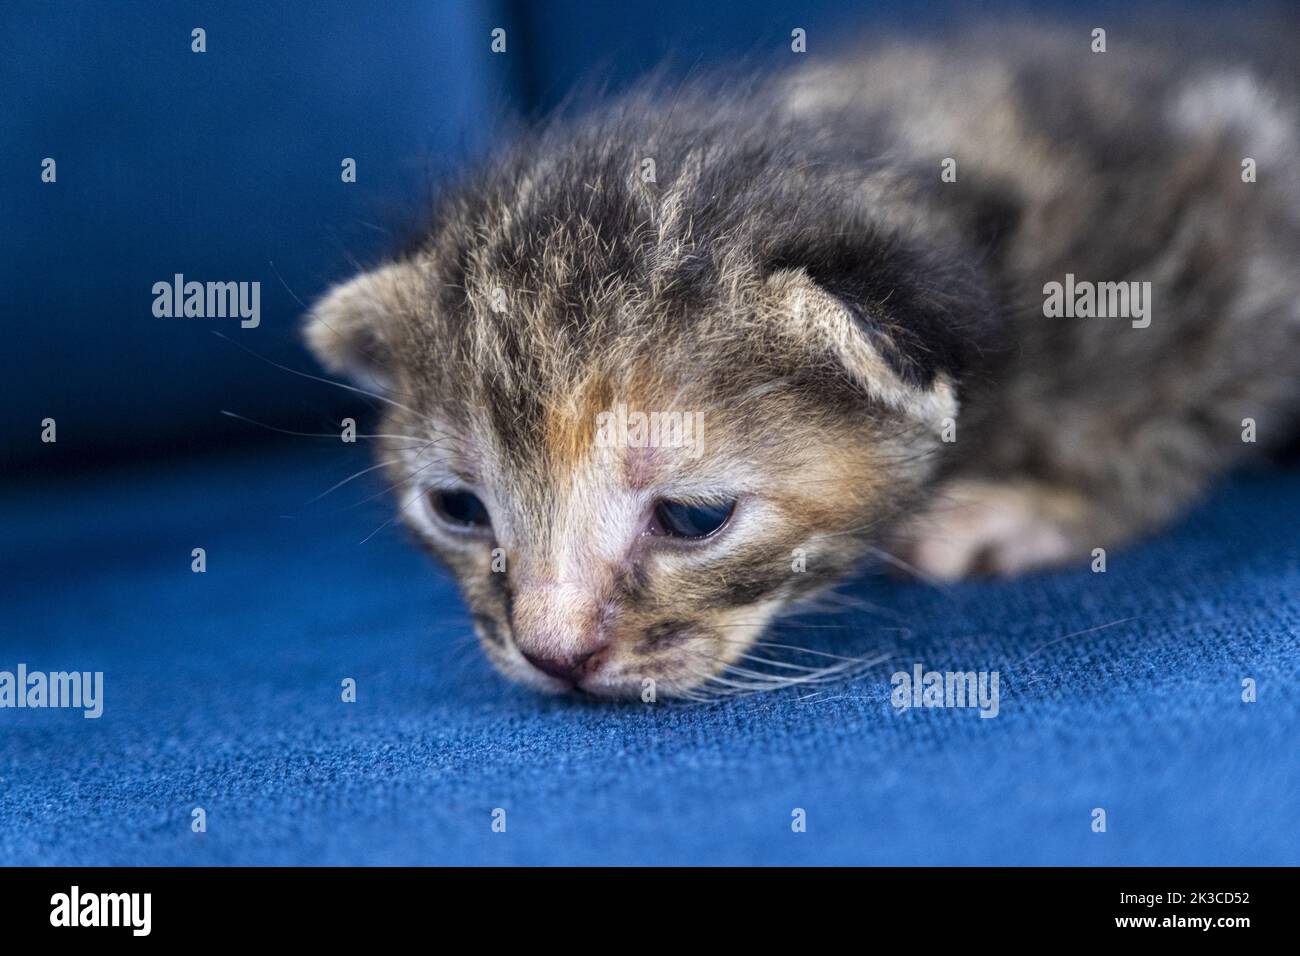 Neugeborene dunkelgrau gestromte Katze, Kätzchen-Konzept, halboffene Augen Neugeborene Katze legt sich, niedliche kleine Kätzchen-Konzept Stockfoto